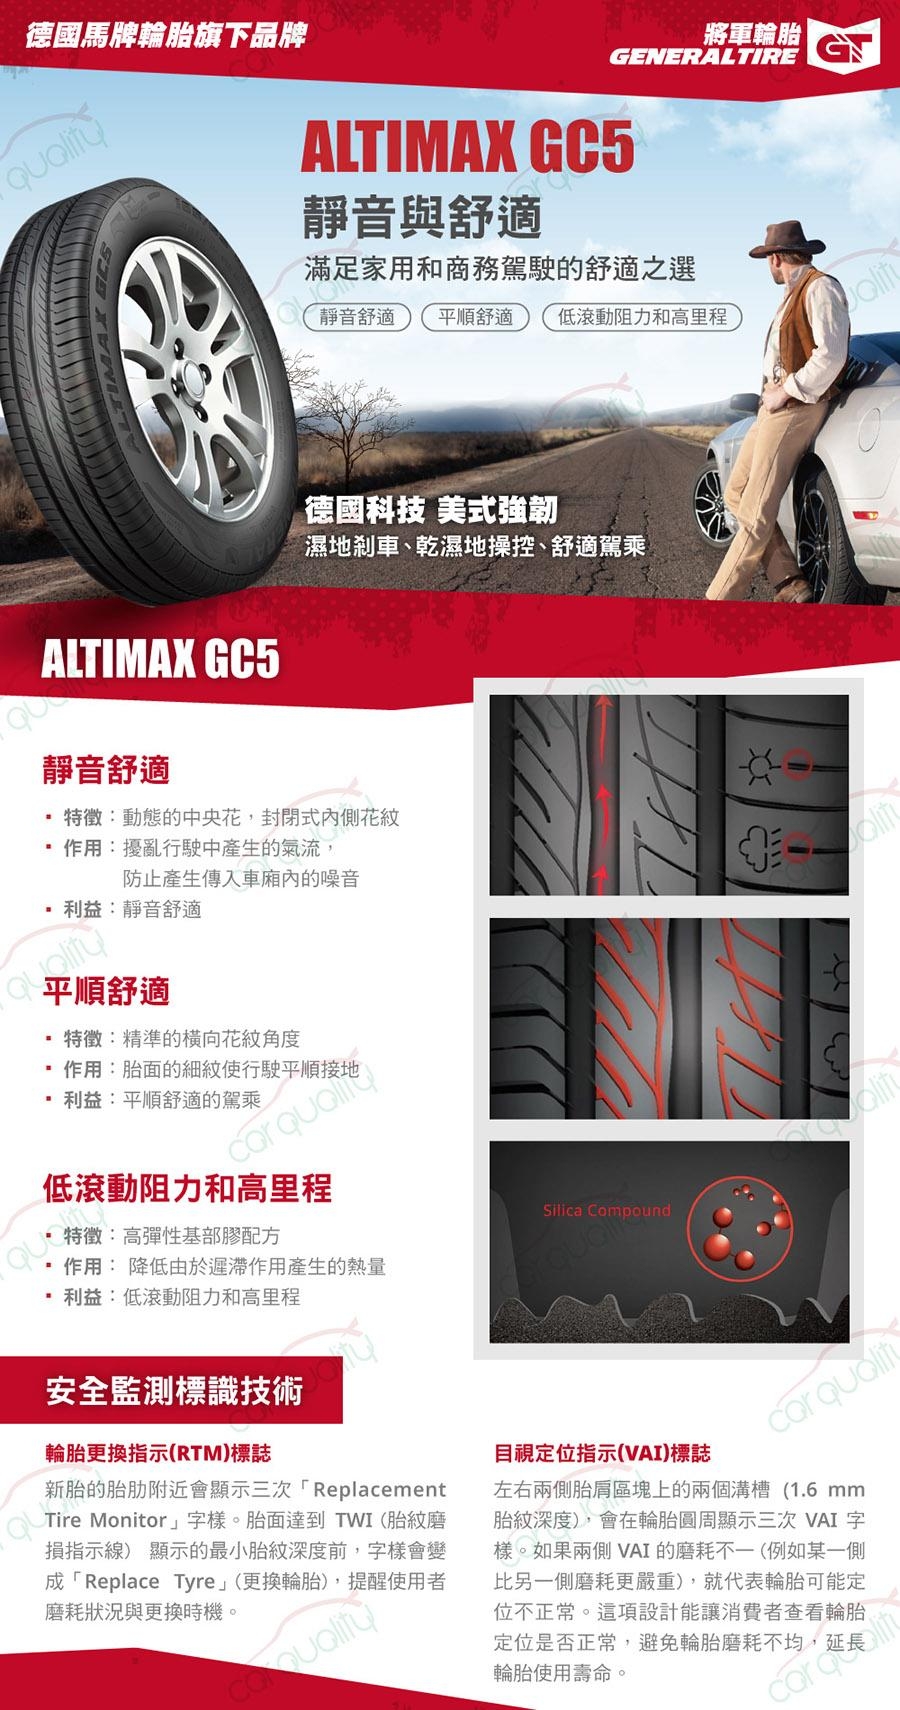 【將軍】ALTIMAX GC5_185/65/14吋 靜音舒適輪胎_送專業安裝 (GC5)